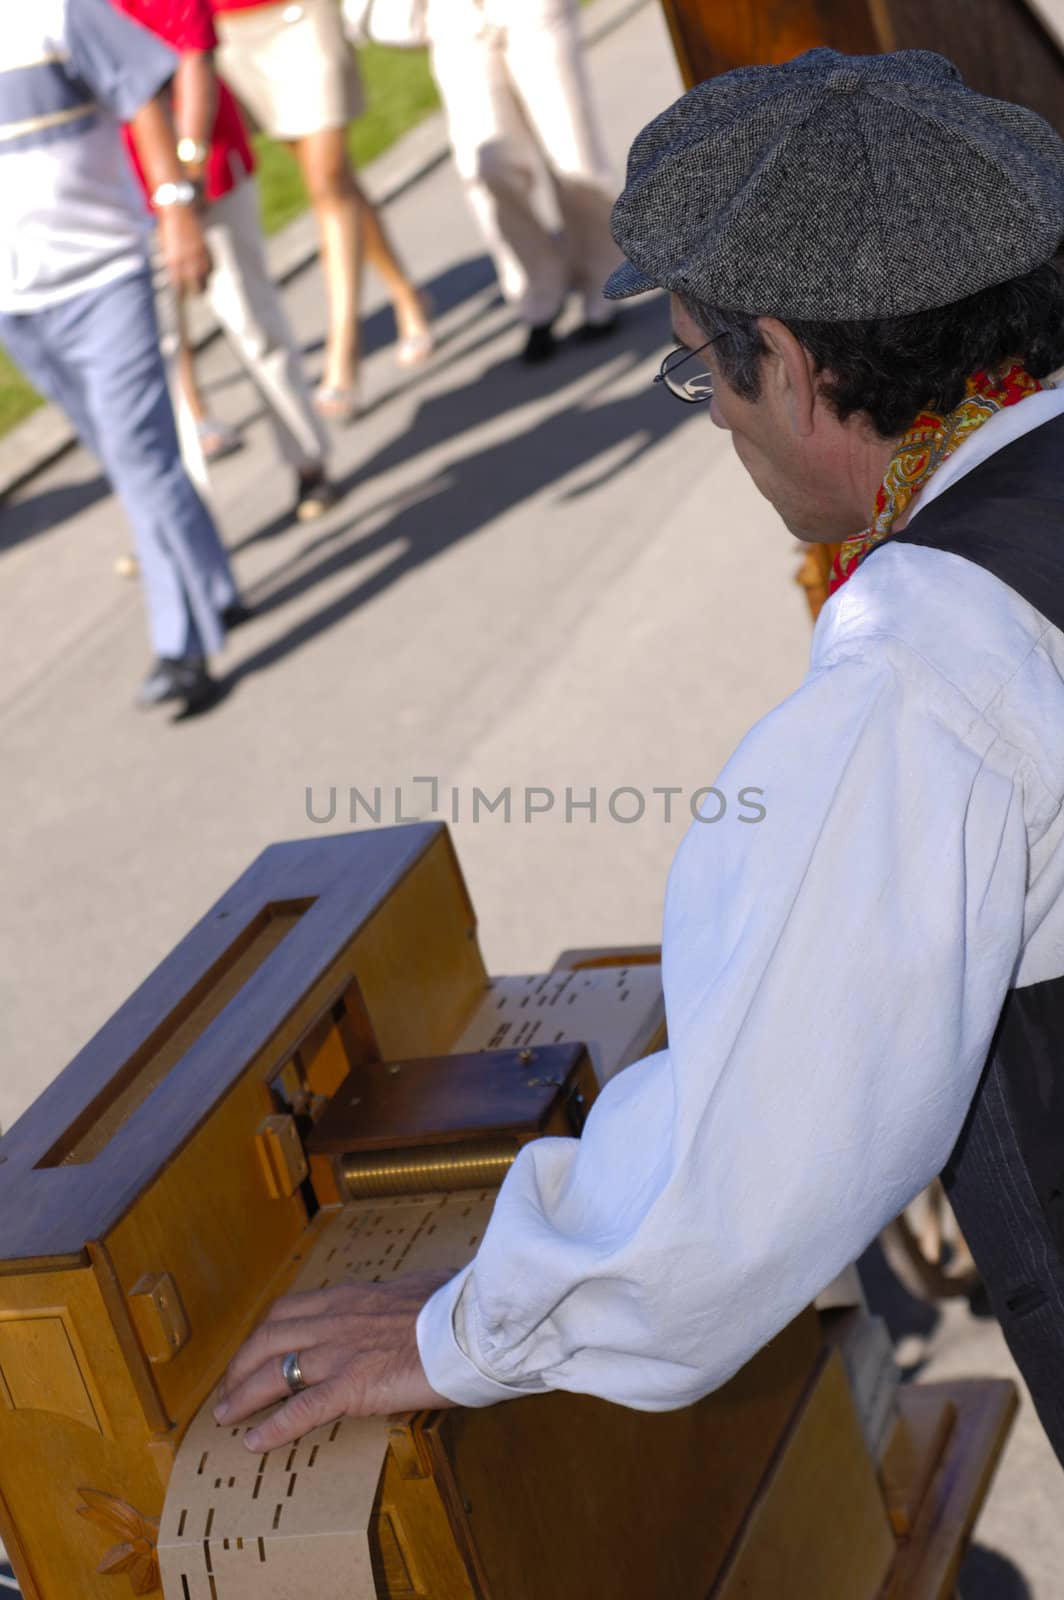 Barrel organist by Bateleur